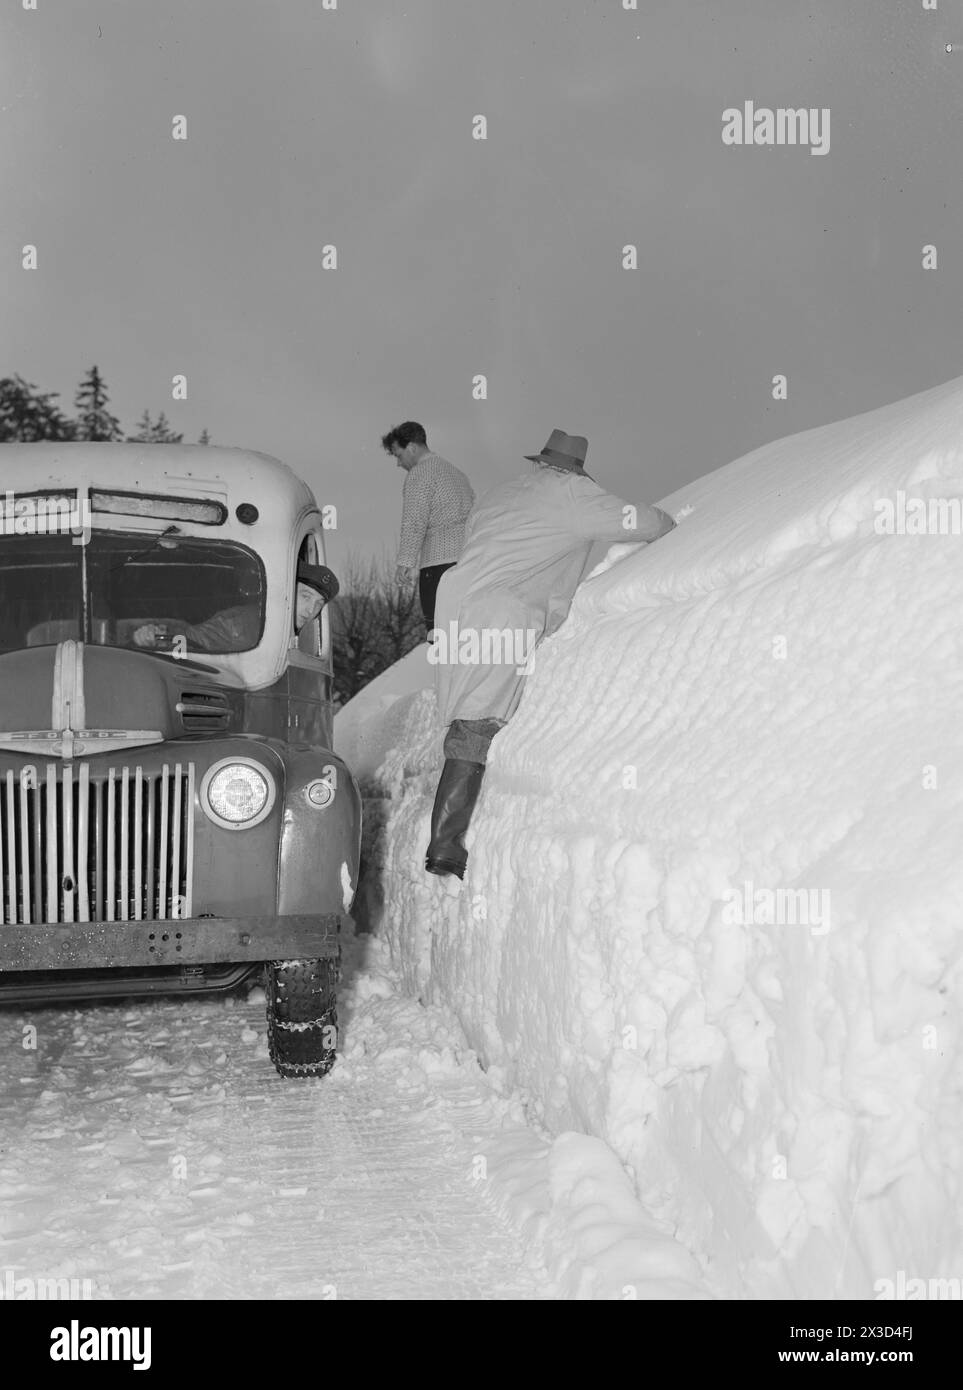 Aktuell 05–1951: Südnorwegen mit Schnee bedeckt. Vier bis fünf Meter hohe Pflugkanten entlang der Straßen, der Schnee ist so hoch, dass man leicht aus dem zweiten Stock gehen kann und die Leute ständig auf die Dächer klettern müssen, um den Schnee von dort weg zu räumen. Die Straßen sind gerade breit genug für ein Auto. Fußgänger, die den Bus vor den Treffpunkten treffen, haben nichts zu tun, als mühsam an den Pflugrändern vorbei zu klettern, um sich selbst zu retten.Foto: Arne Kjus / aktuell / NTB ***Foto ist nicht bildbearbeitet*** dieser Bildtext wird automatisch übersetzt Stockfoto